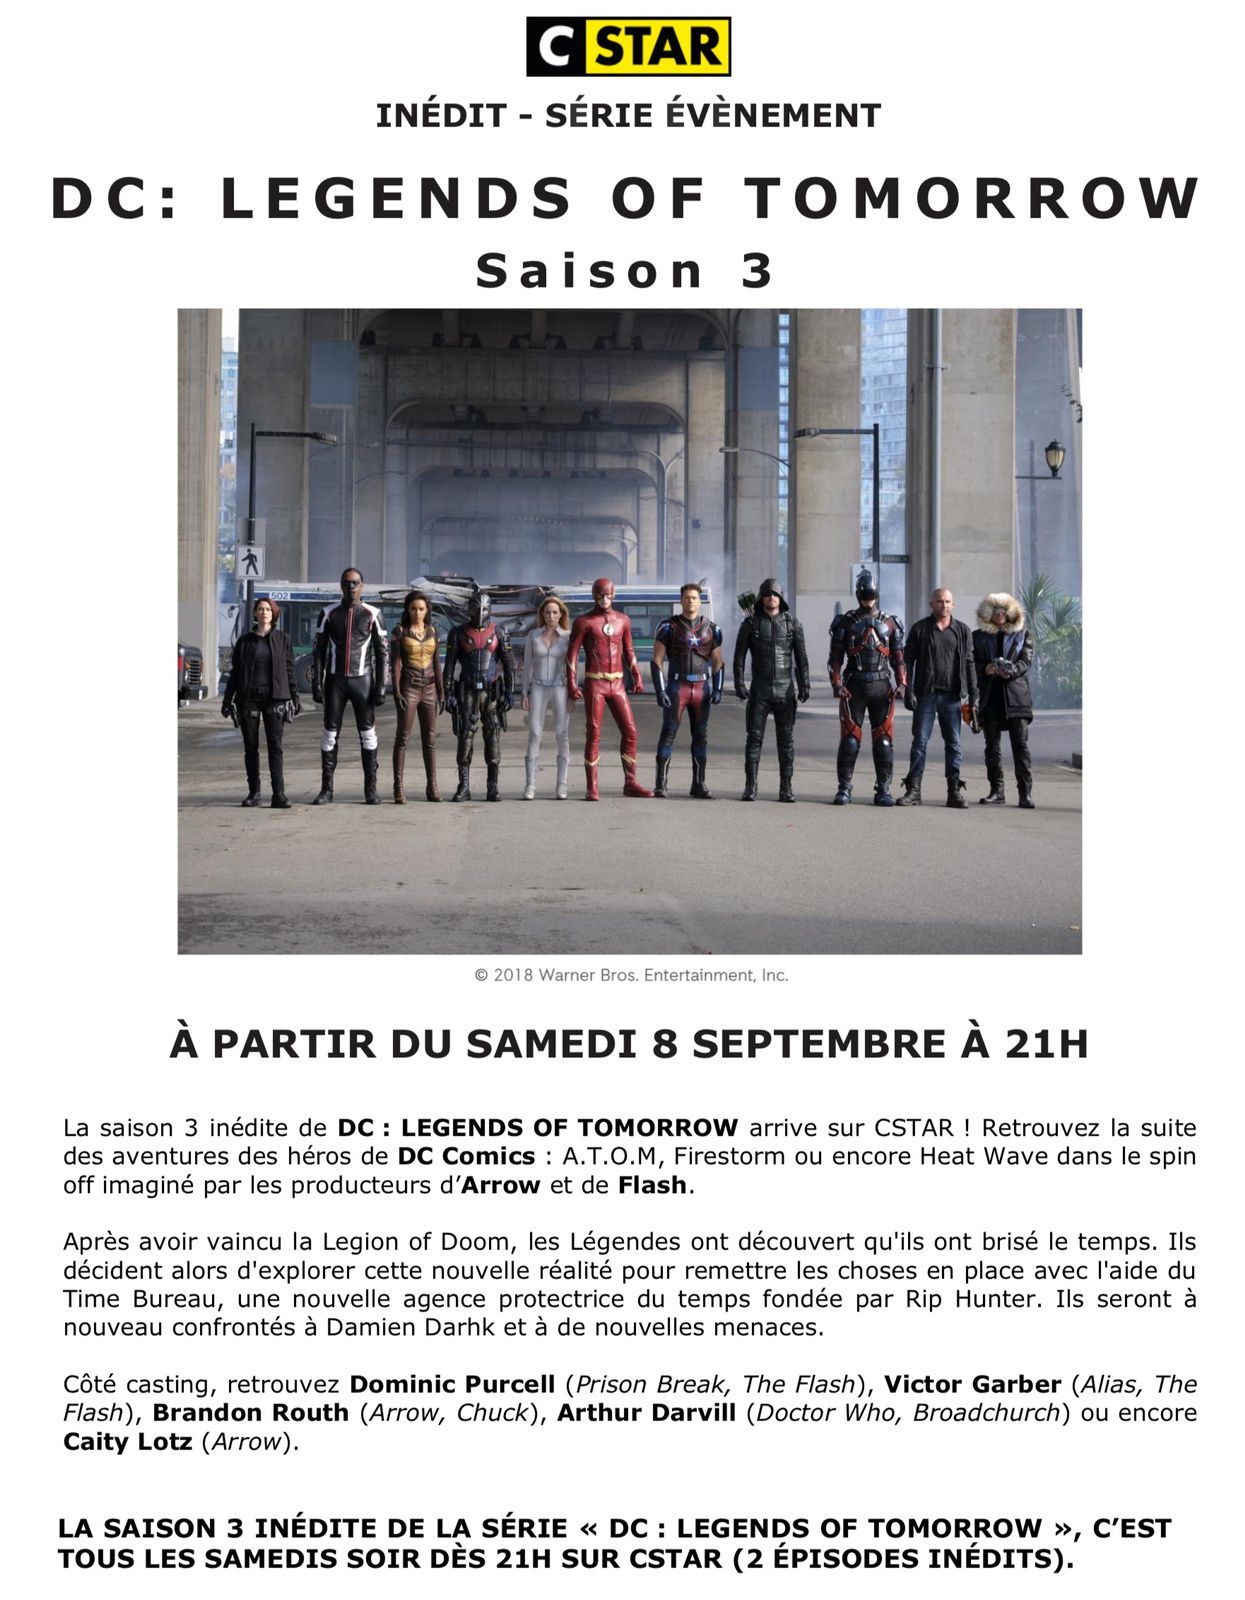 La saison 3 inédite de DC : LEGENDS OF TOMORROW arrive sur CStar samedi 8 septembre.